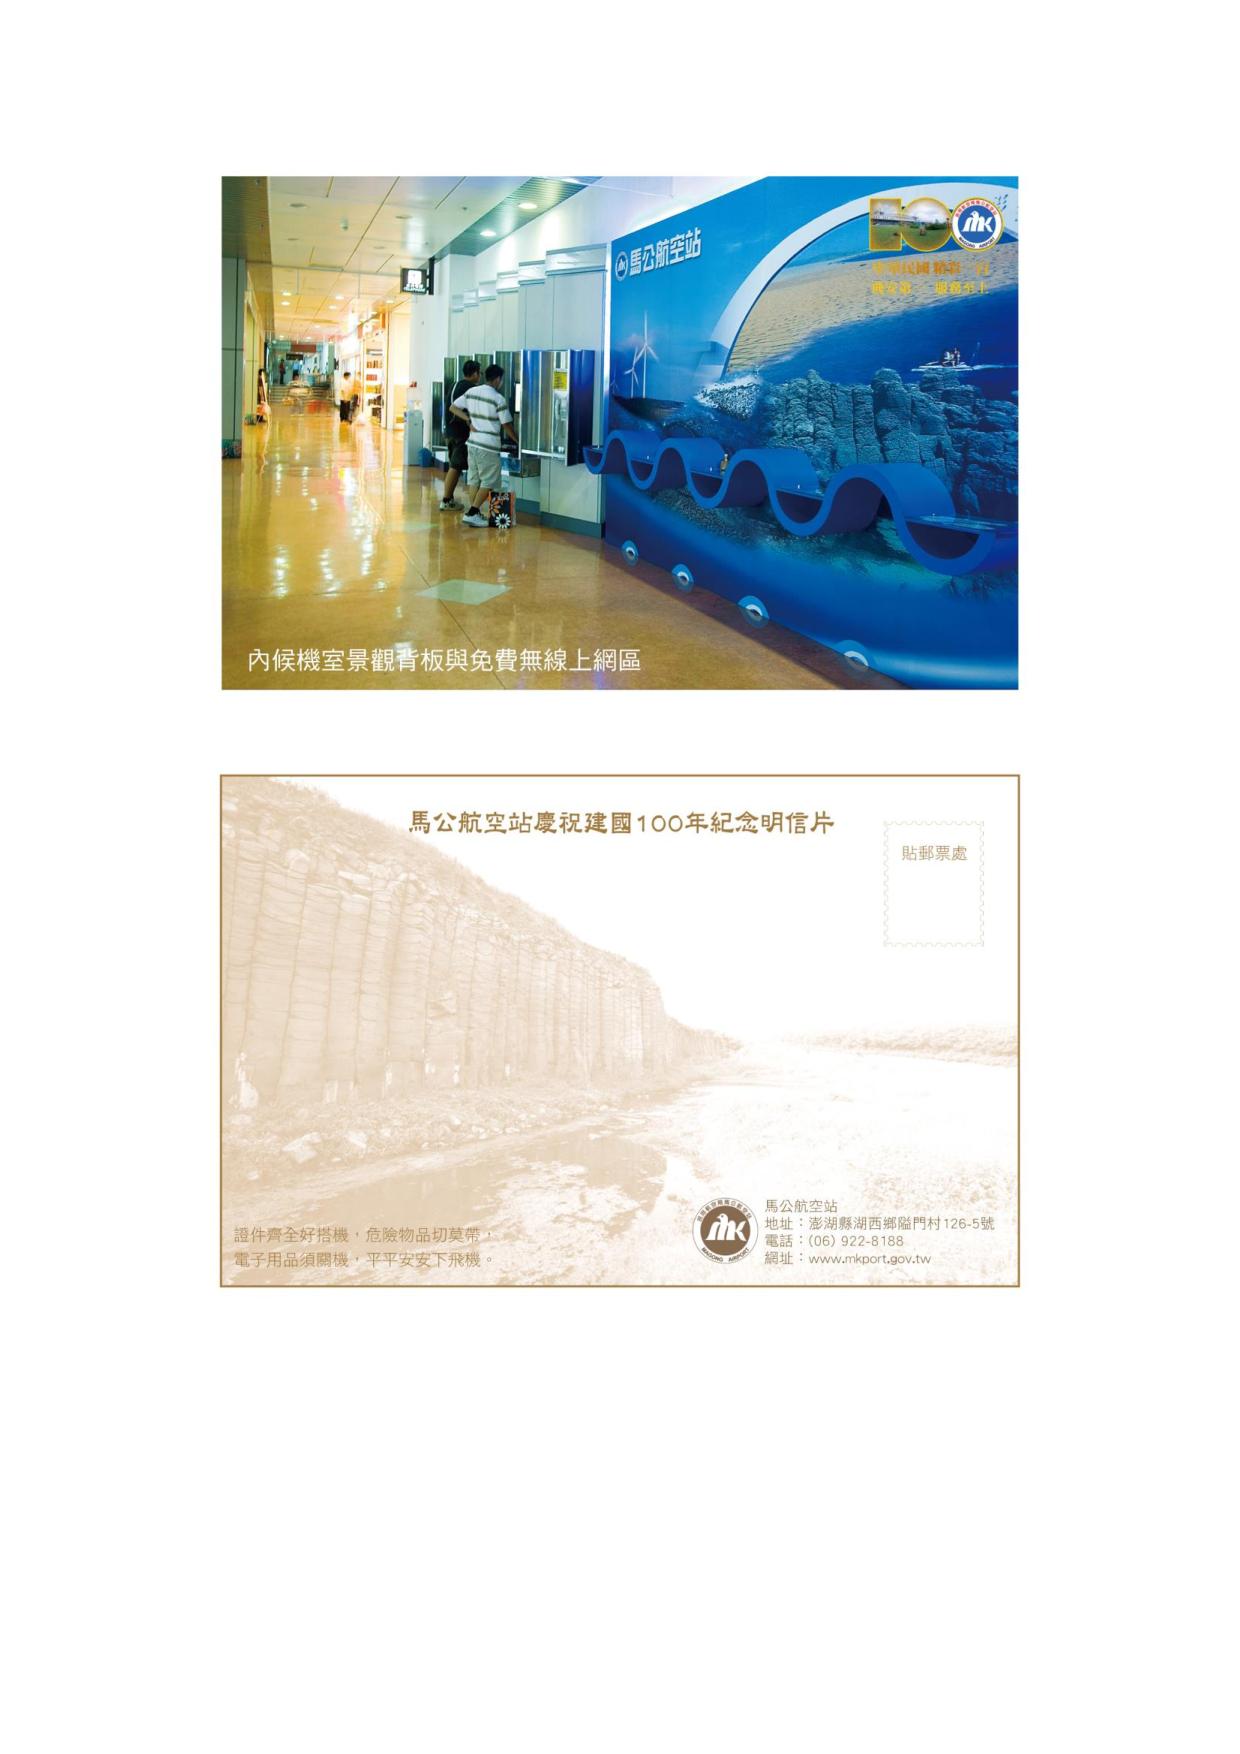 馬公站慶祝建國一百年紀念明信片4